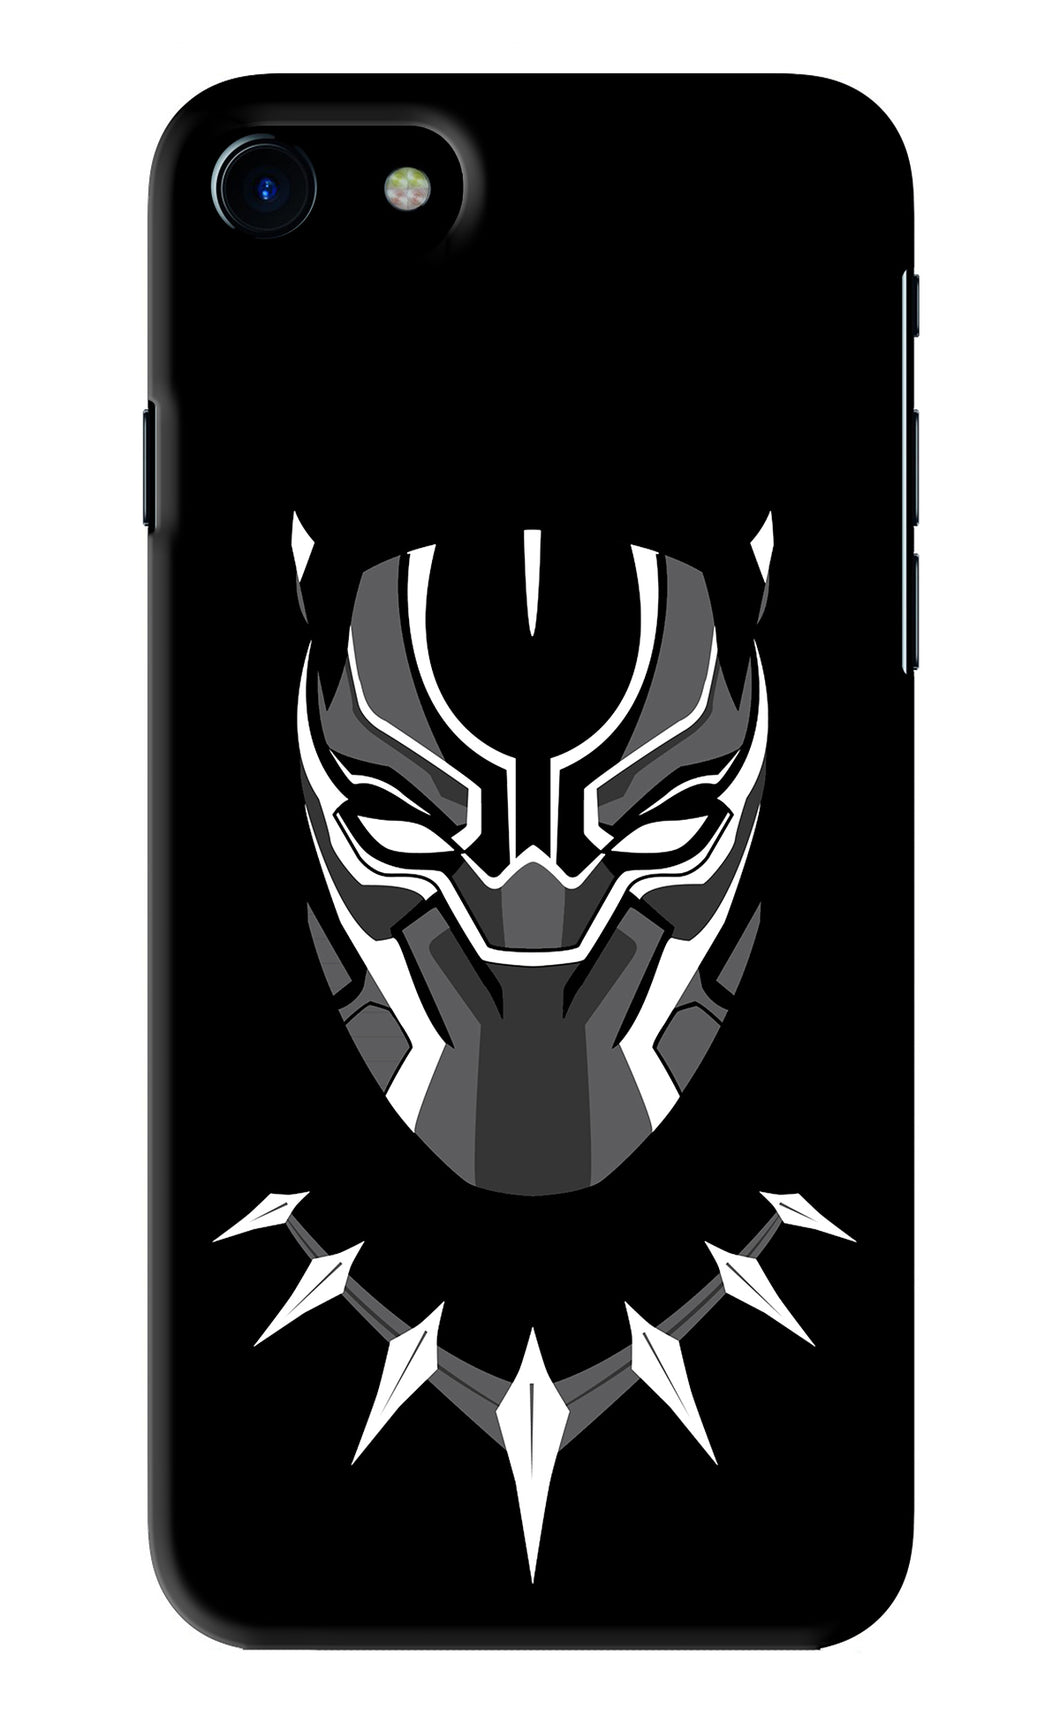 Black Panther iPhone 7 Back Skin Wrap